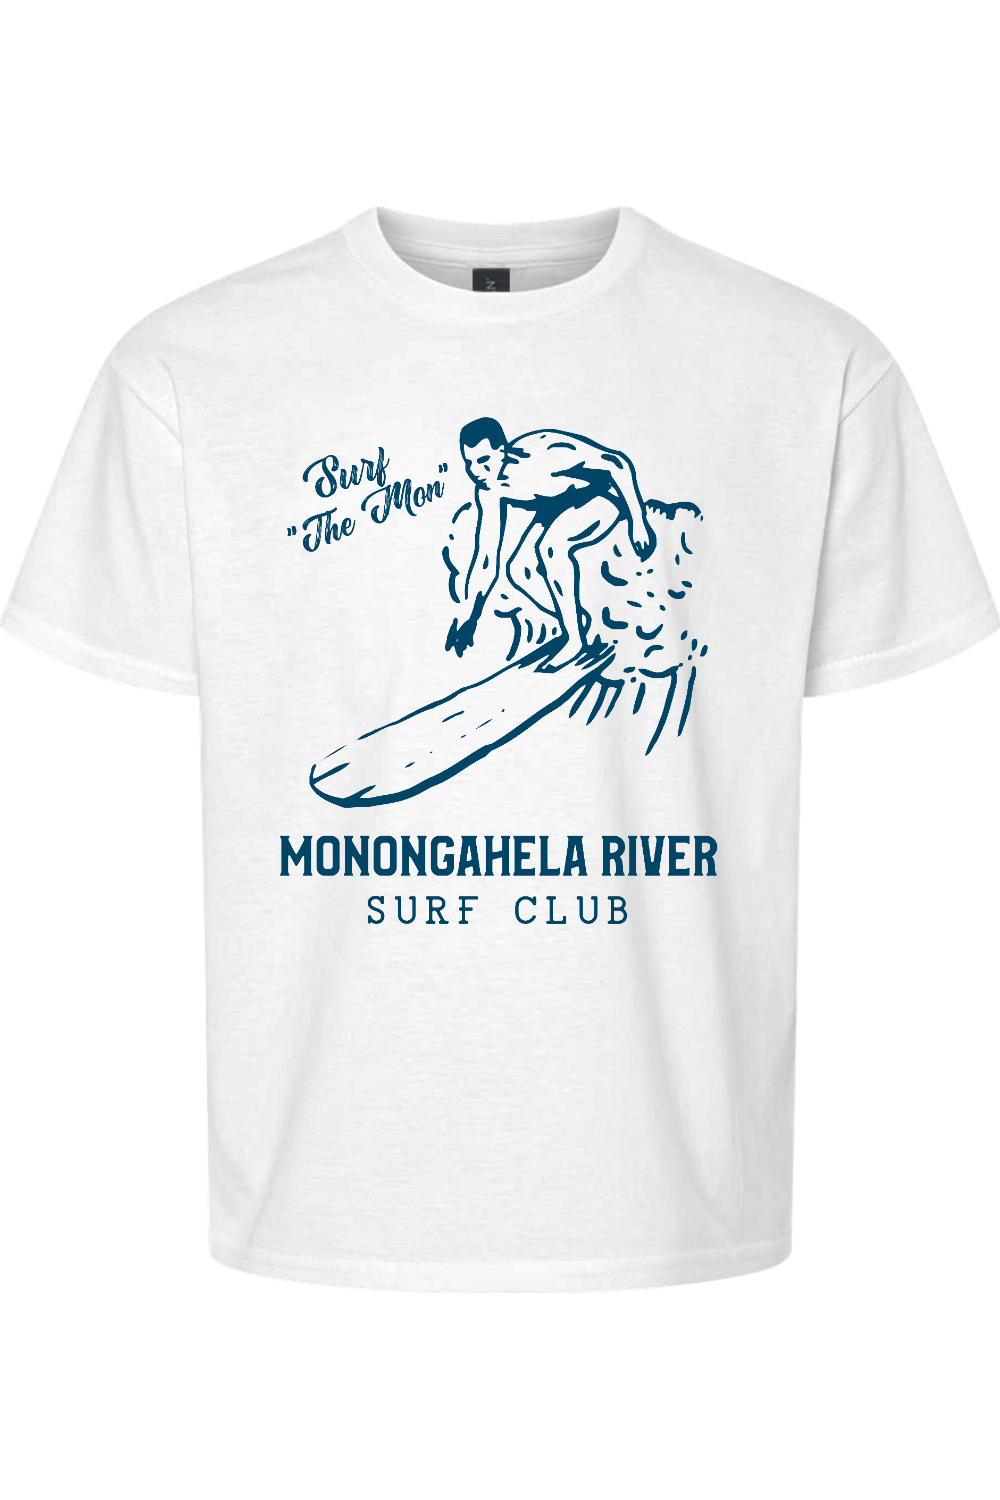 Monongahela River Surf Club - Kids - Yinzylvania